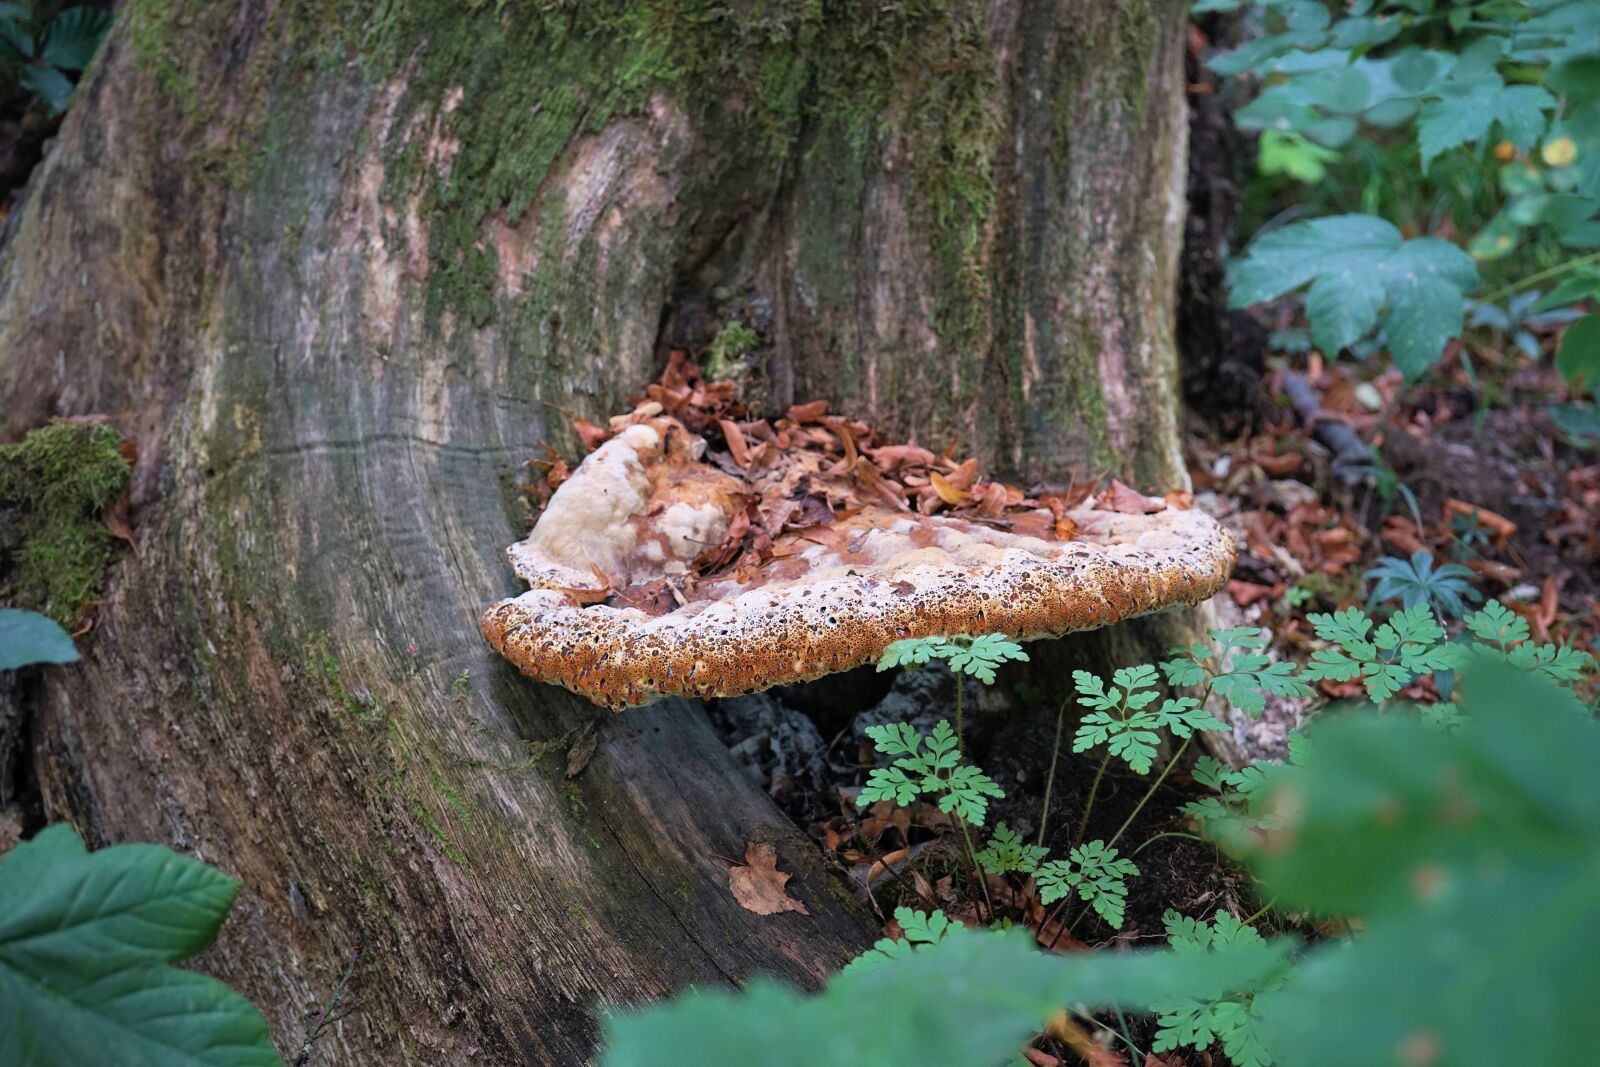 Sony FE 50mm F2.8 Macro sample photo. Mushroom, tree fungus, tree photography